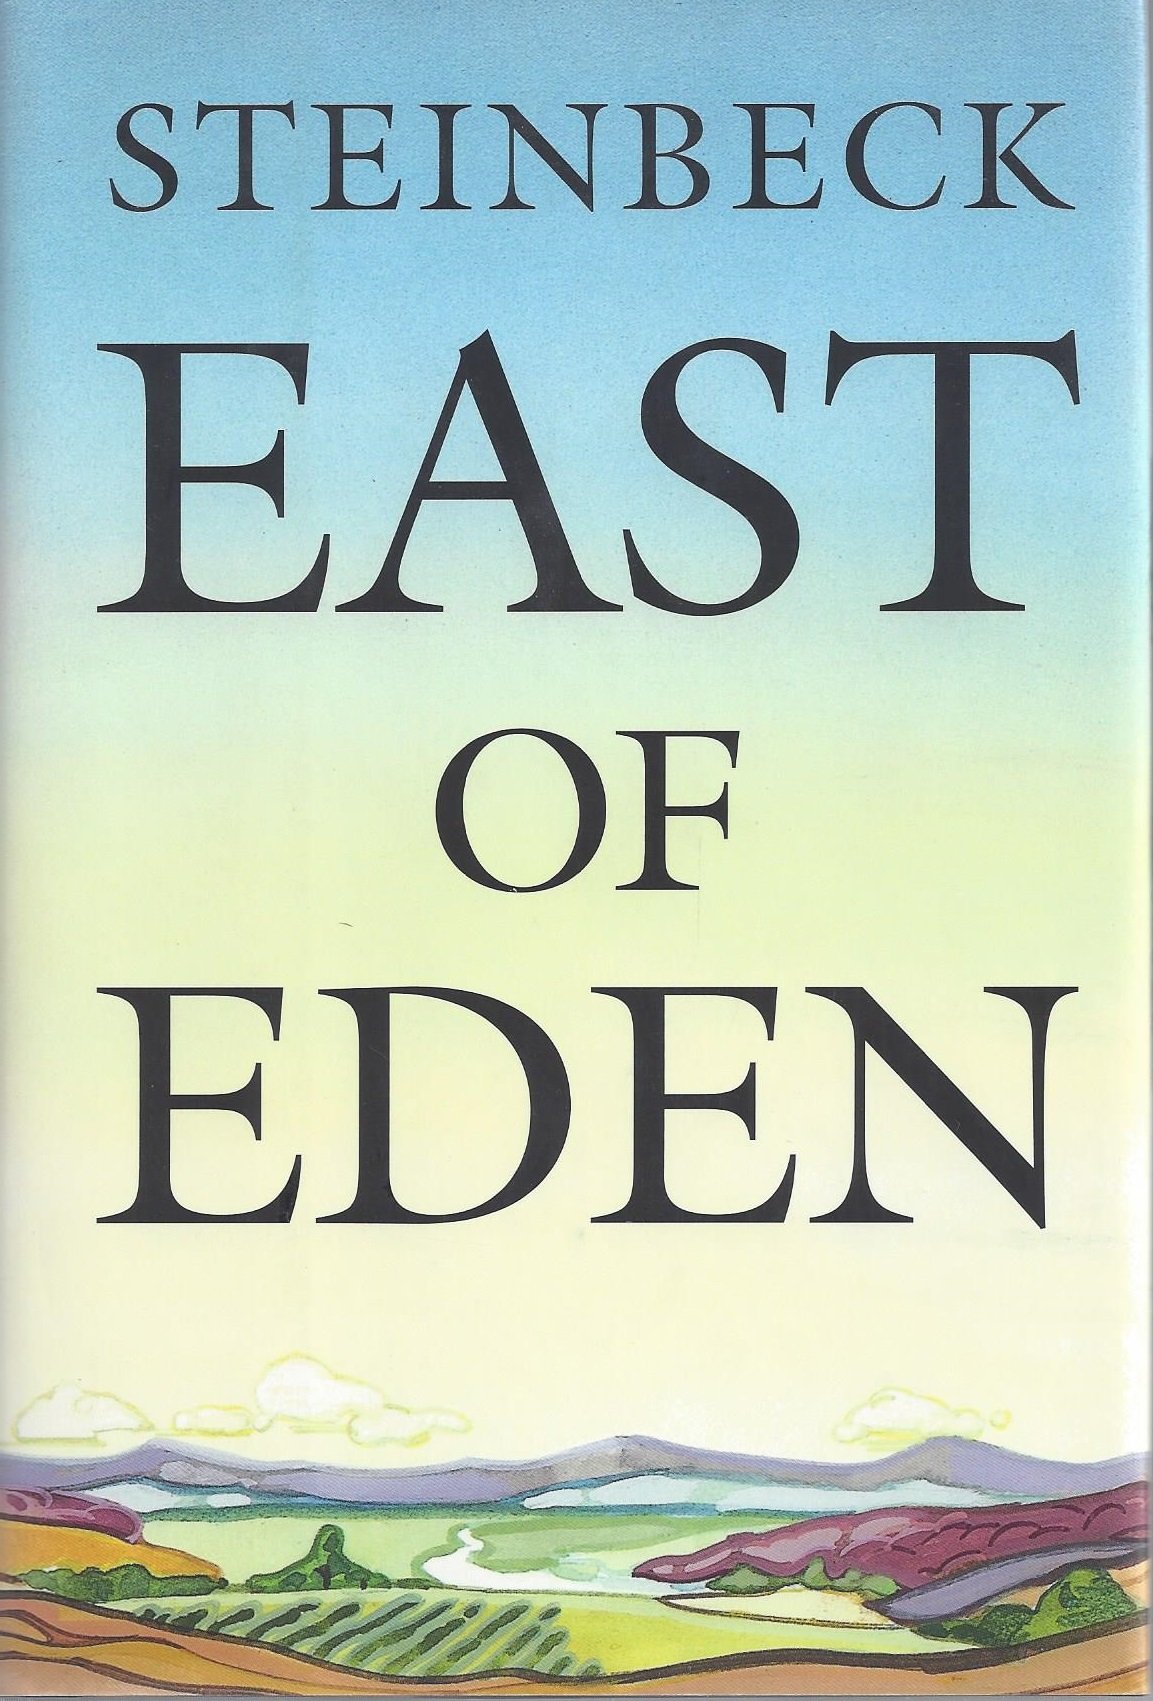 East of Eden - John Steinbeck - listen online for free